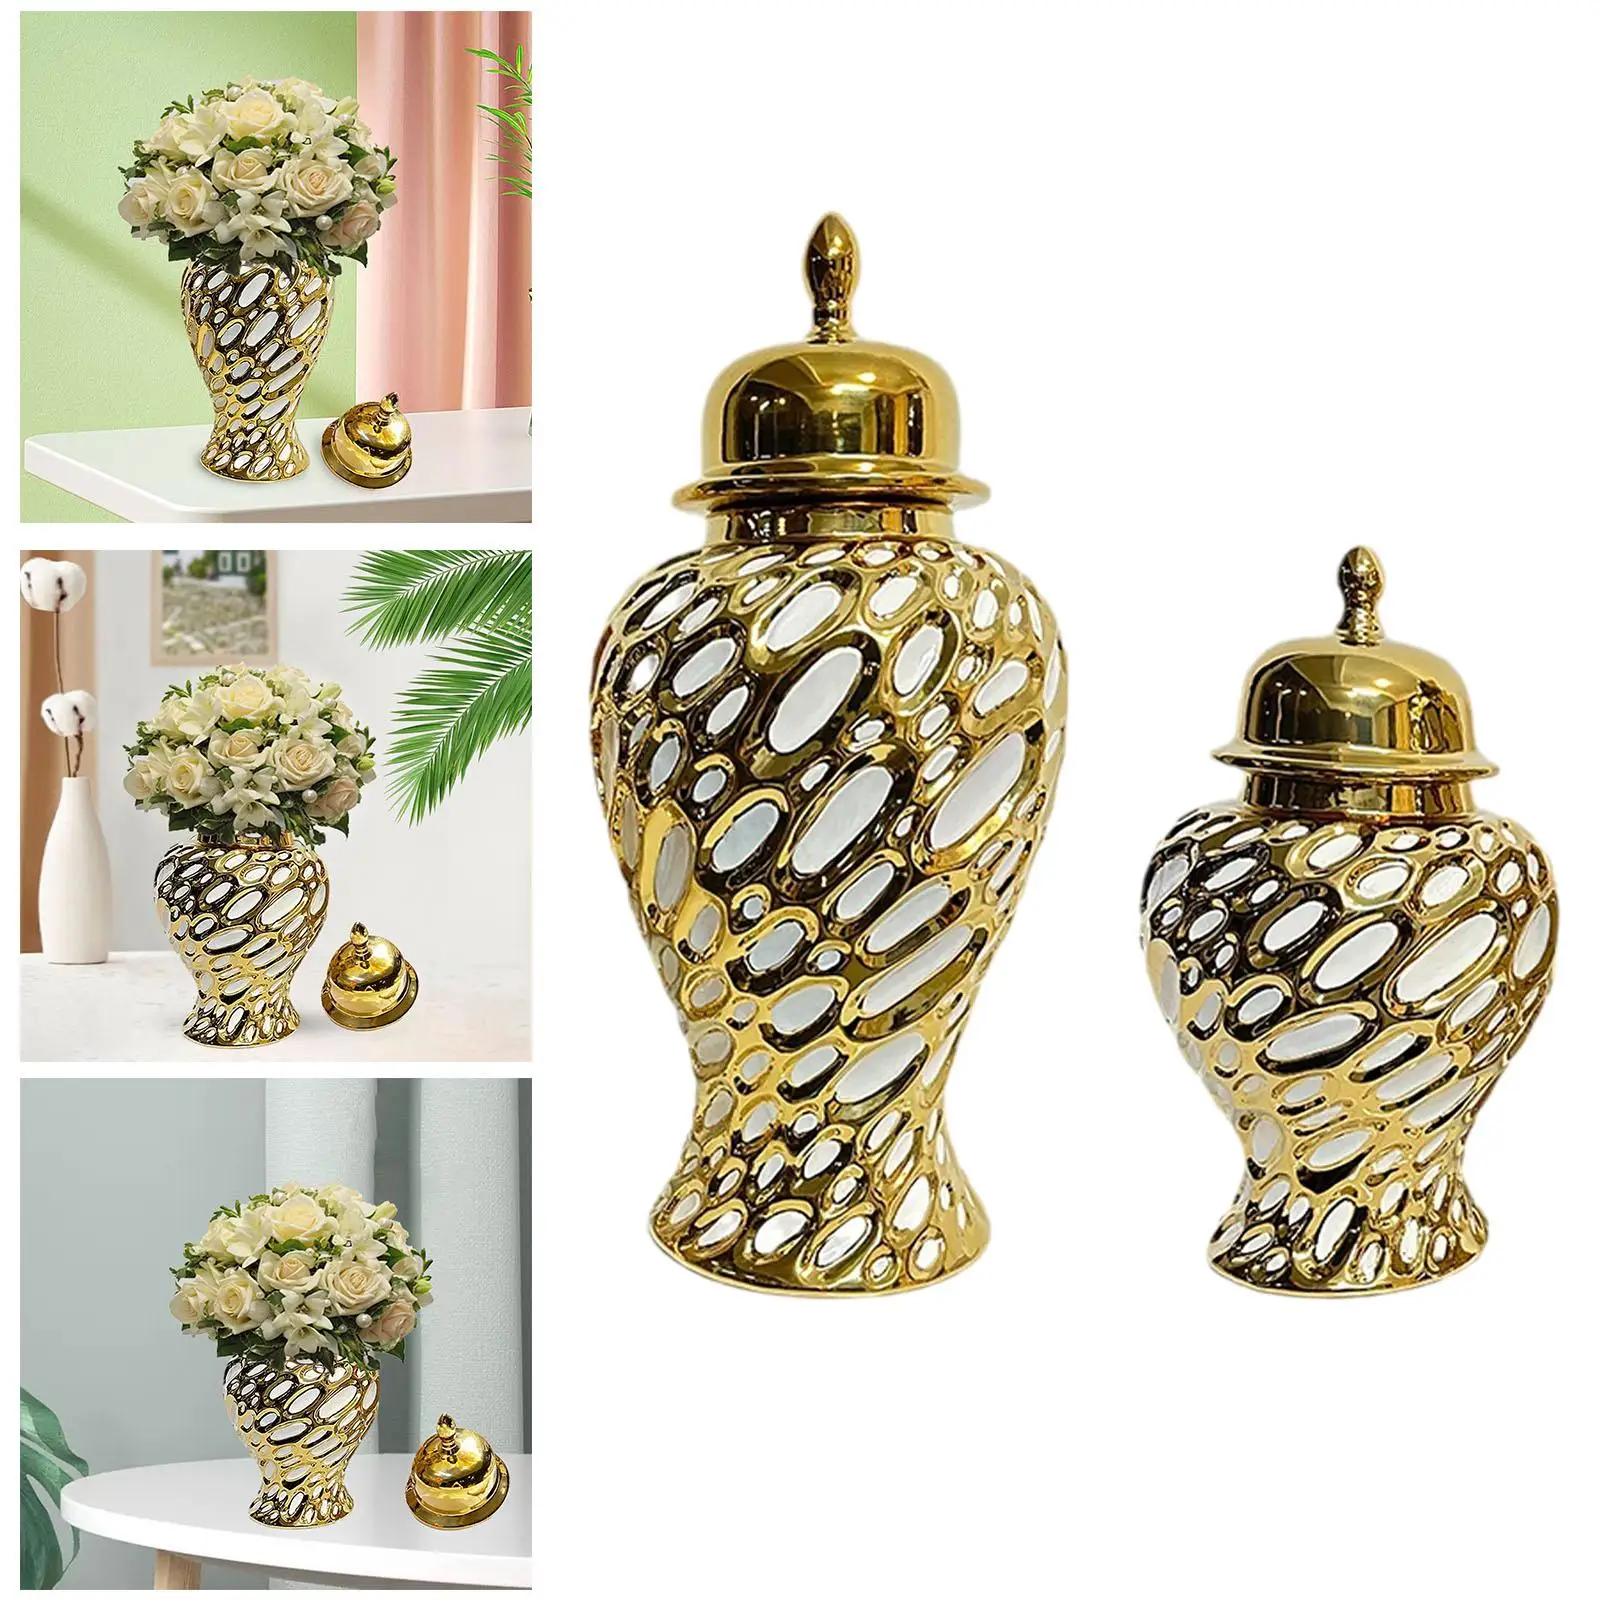 Porcelain Ginger Jar Handicraft with Lid Ceramic Flower Vase Storage Jar for Living Room Office Party Bedroom Home Decoration